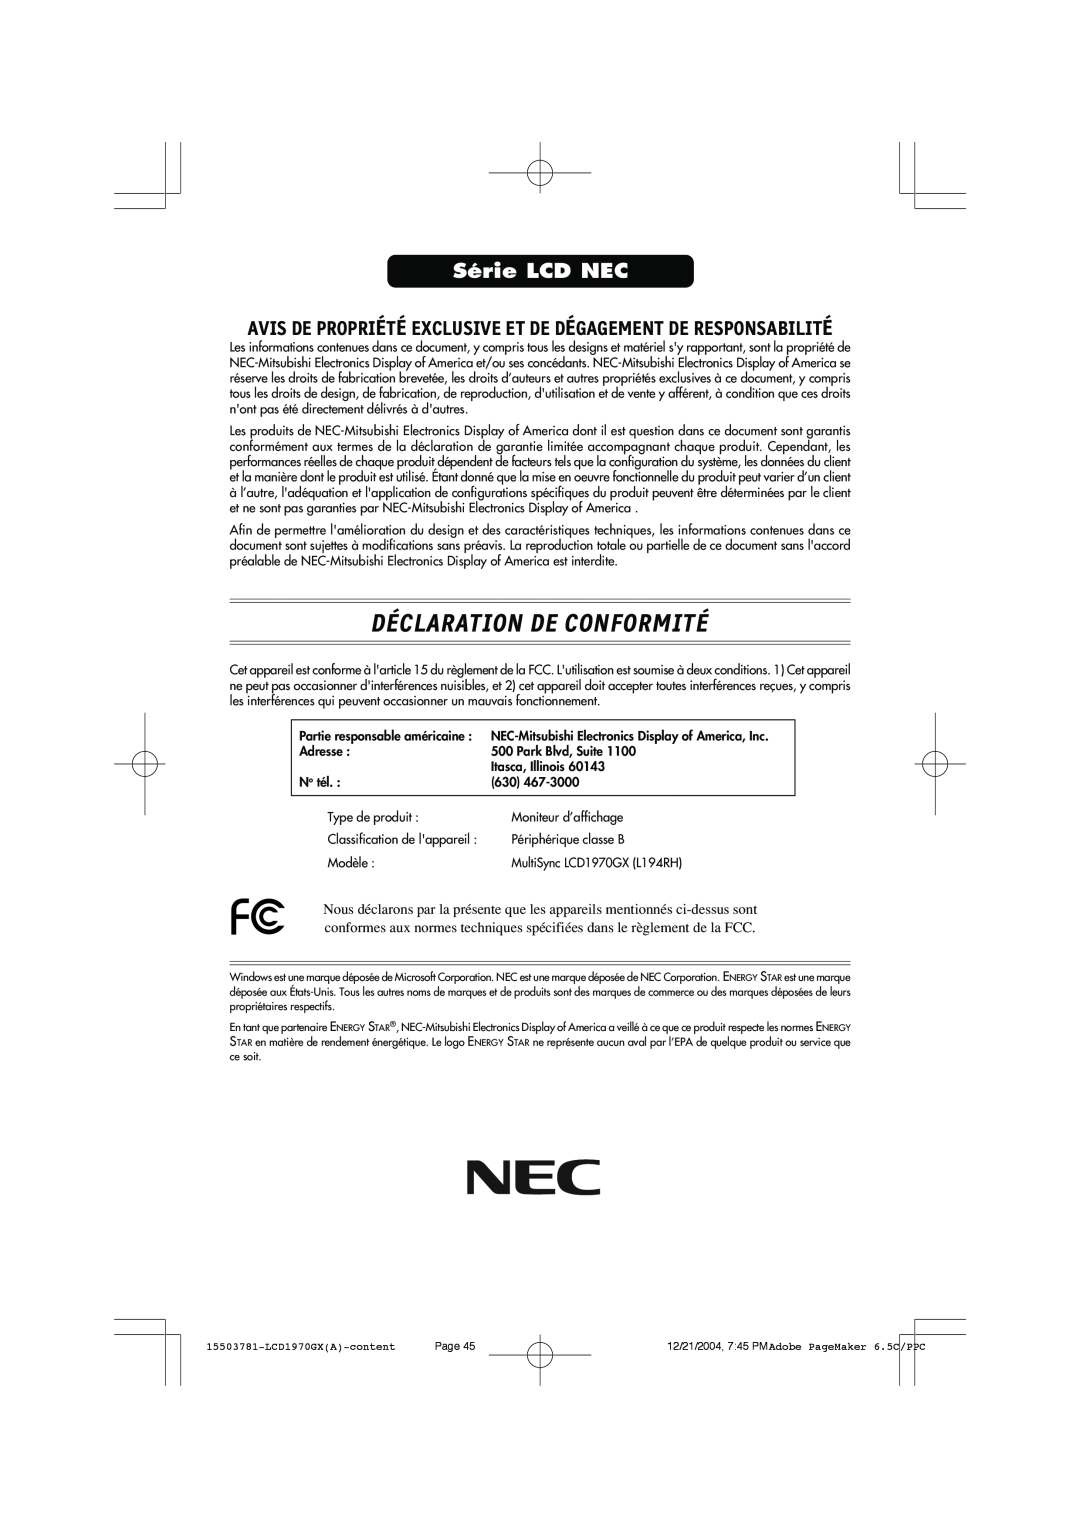 NEC LCD1970GX user manual Déclaration De Conformité, Série LCD NEC 